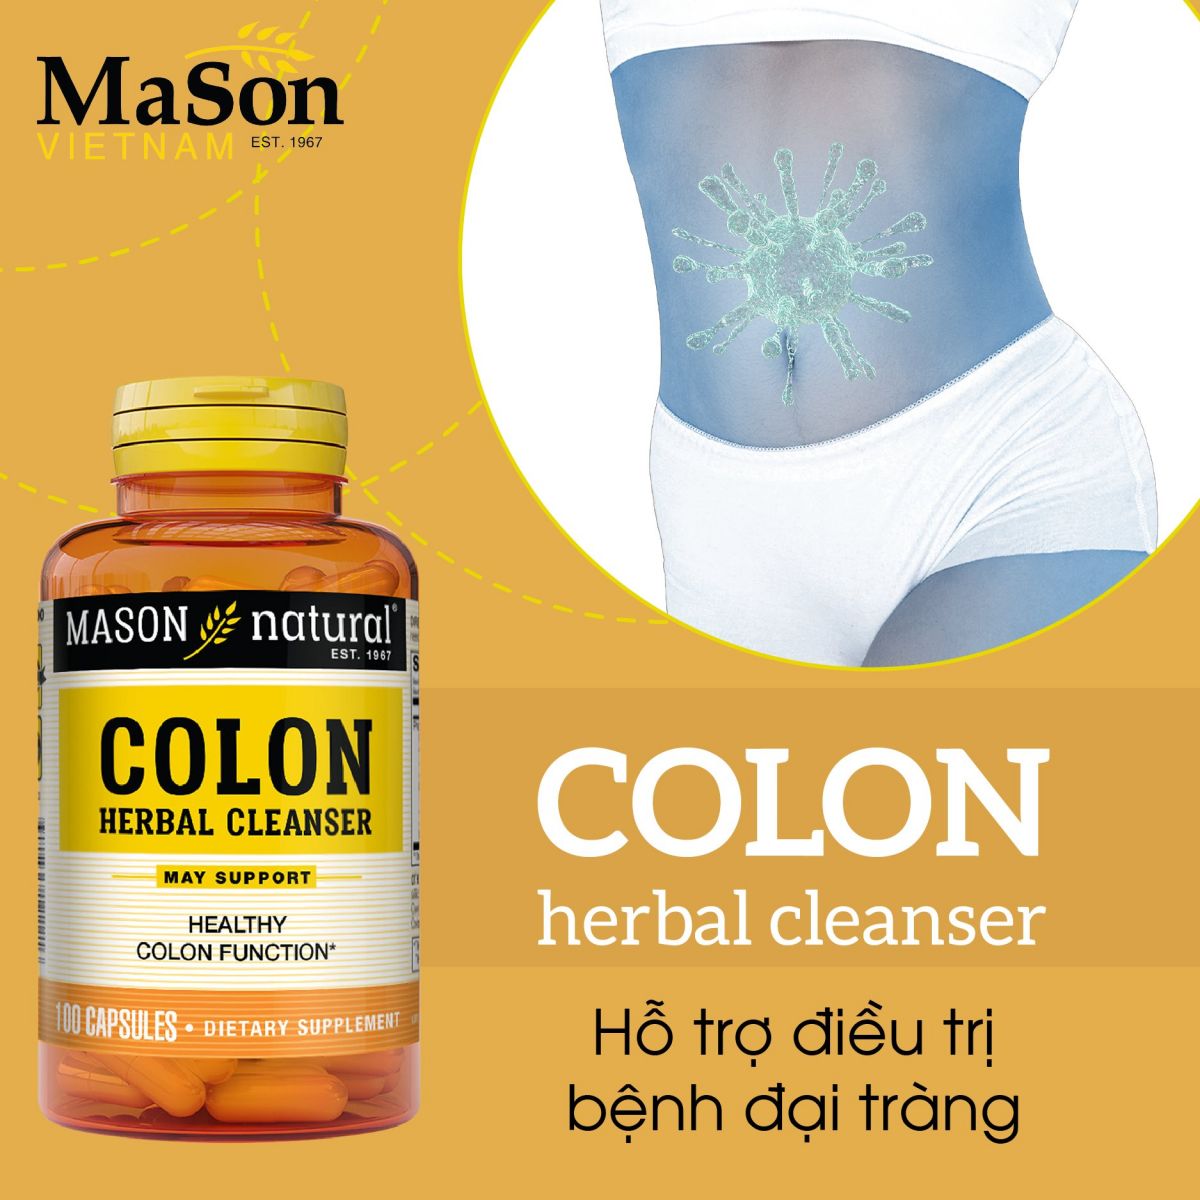 Review khách hàng nhà thuốc Phương Chính chia sẻ về sản phẩm Colon của Mason 2